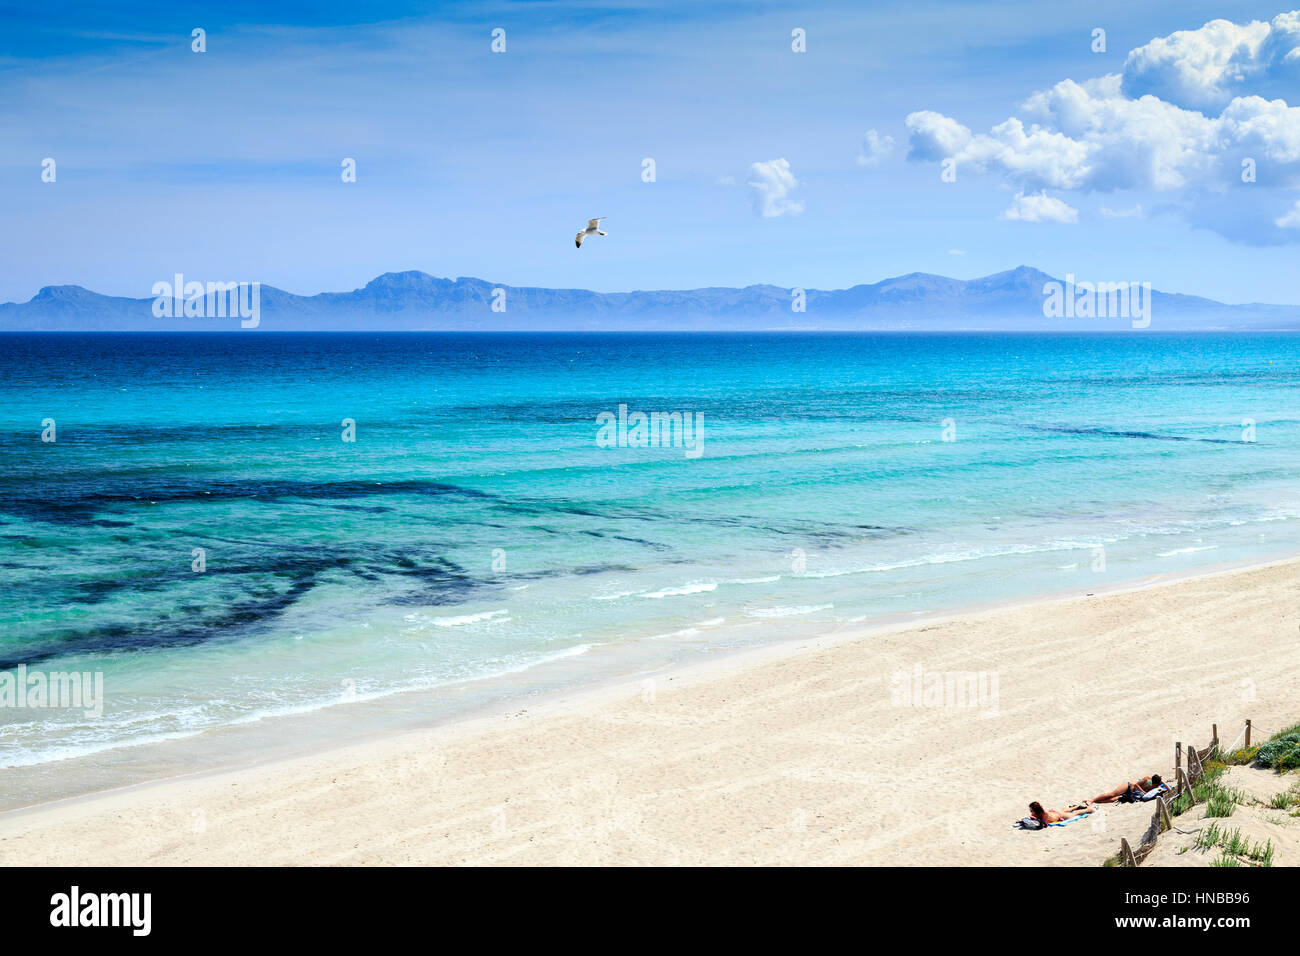 Playa de Muro Beach, Mallorca Stock Photo